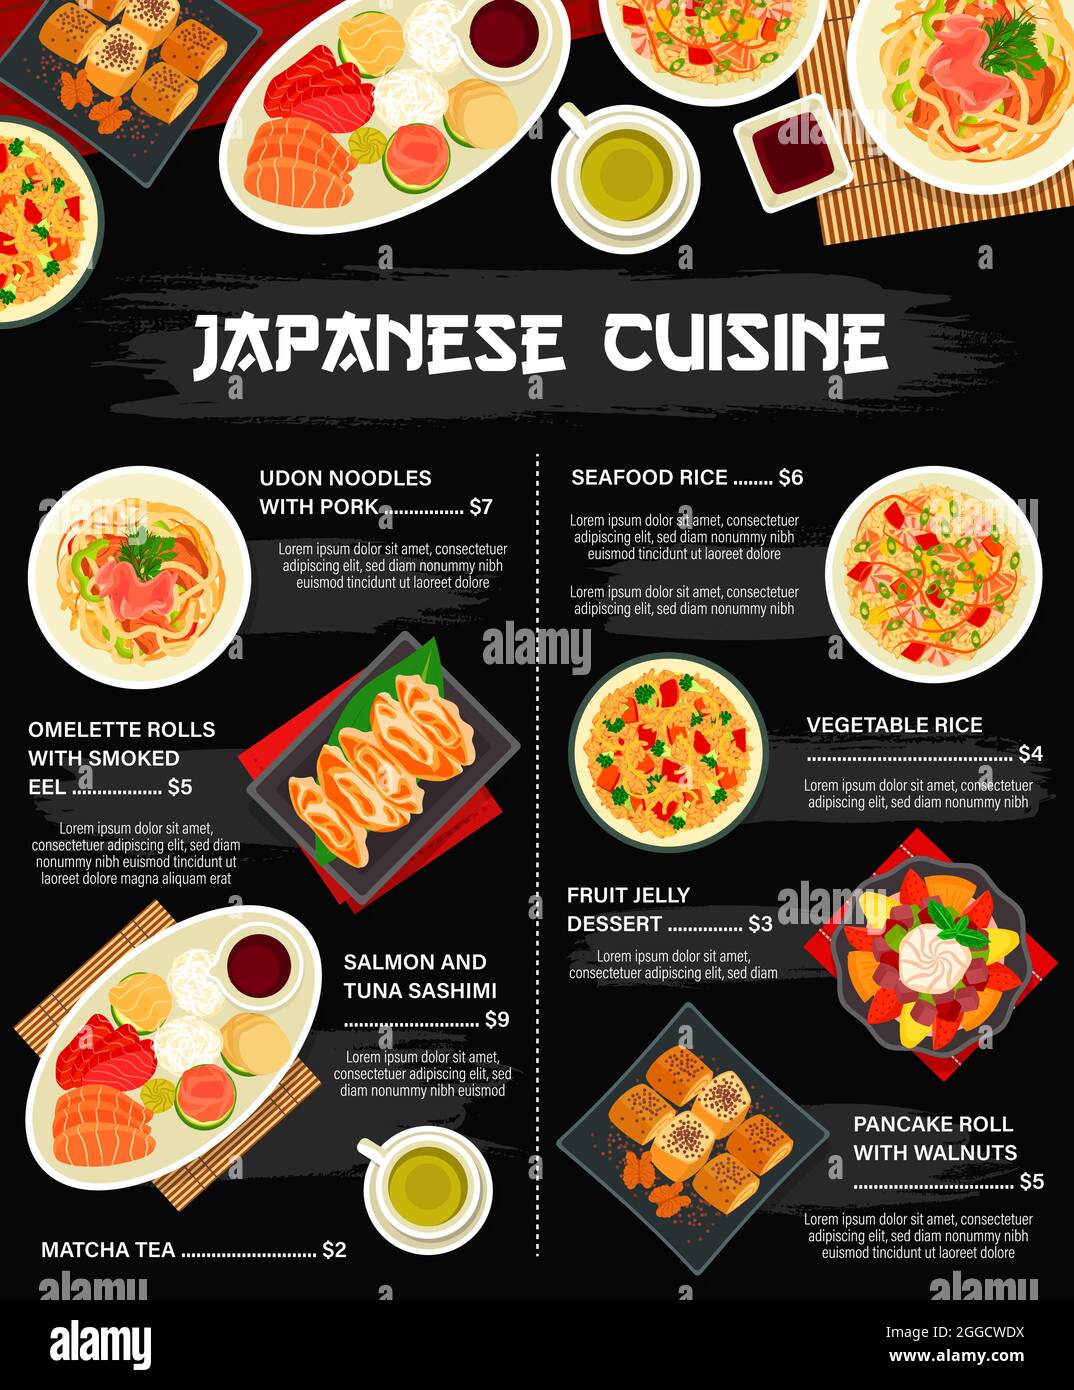 Chào mừng bạn đến với nhà hàng Nhật Bản chất lượng cao nhất trên địa bàn. Với nhiều món ăn đặc trưng, từ sushi cho đến ramen truyền thống, chúng tôi cam kết mang lại cho bạn những trải nghiệm ẩm thực tuyệt vời nhất. Hãy cùng khám phá những hình ảnh đẹp và tràn đầy sức sống của nhà hàng Nhật Bản của chúng tôi. 